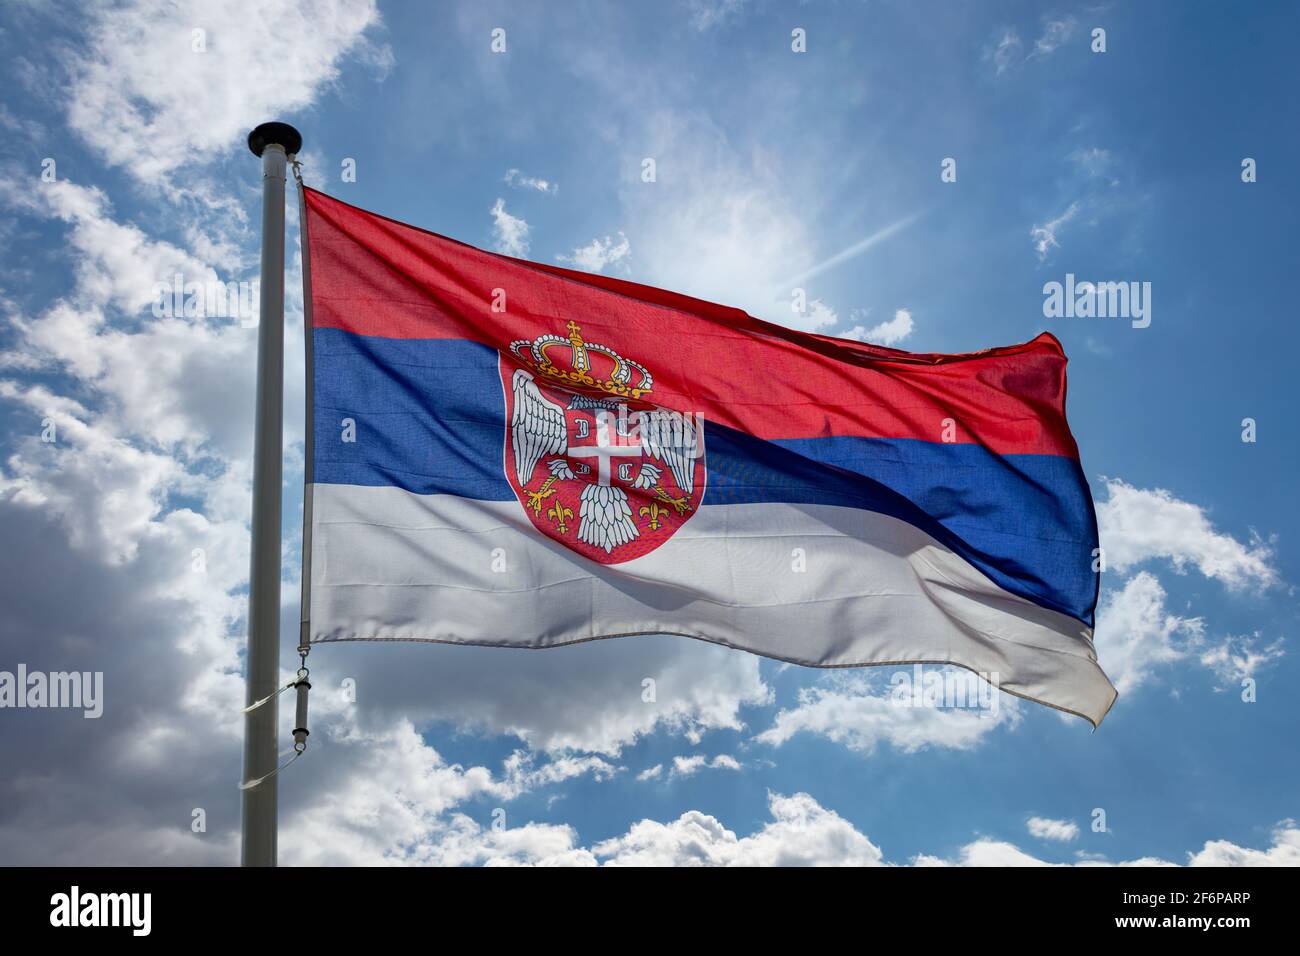 Flagge Serbiens, nationales Symbol der Republik Serbien auf einem Fahnenmast, der gegen den blau bewölkten Himmel winkt Stockfoto